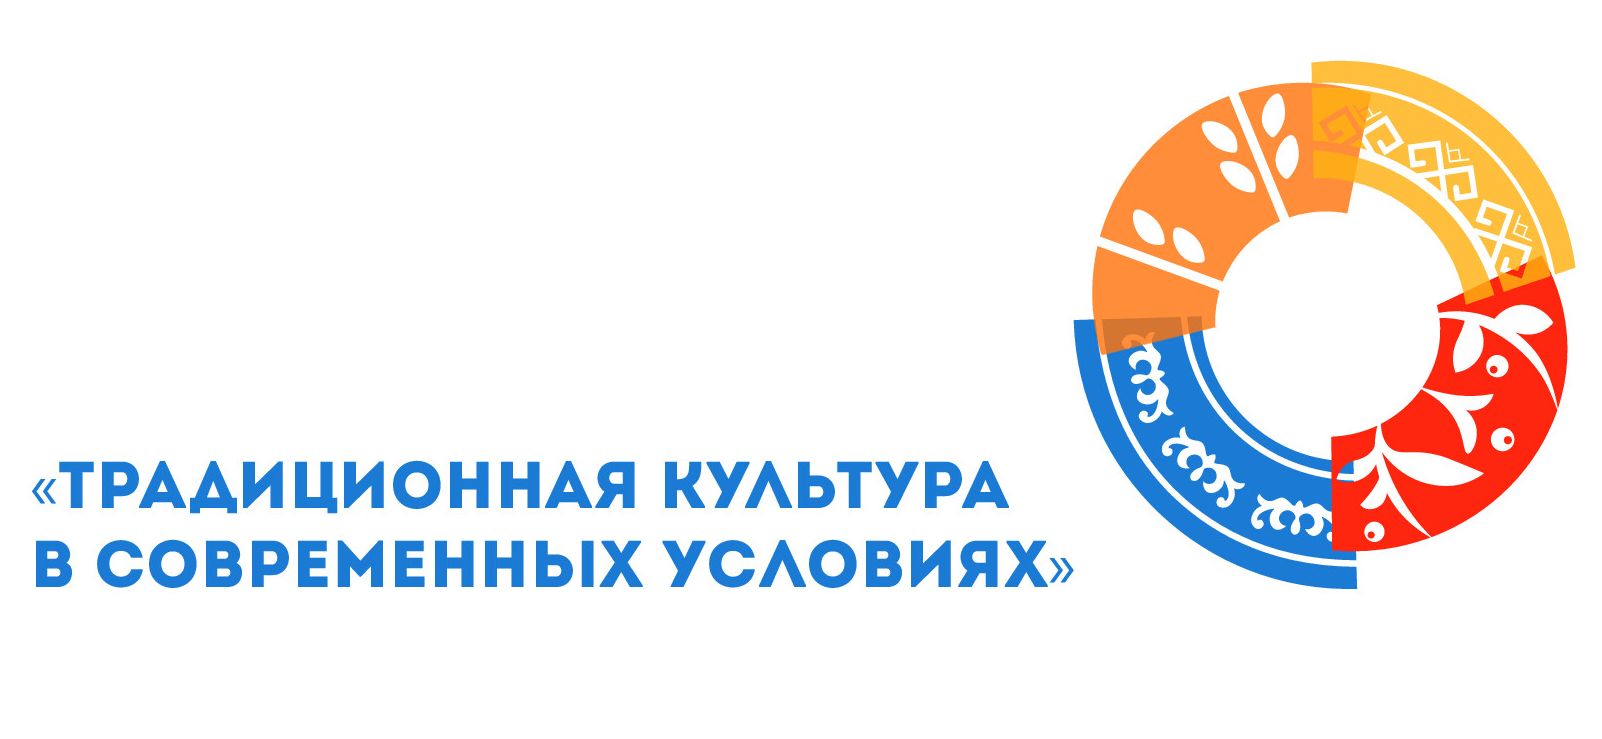 Съезд работников культурно-досуговых учреждений Алтайского края завершился